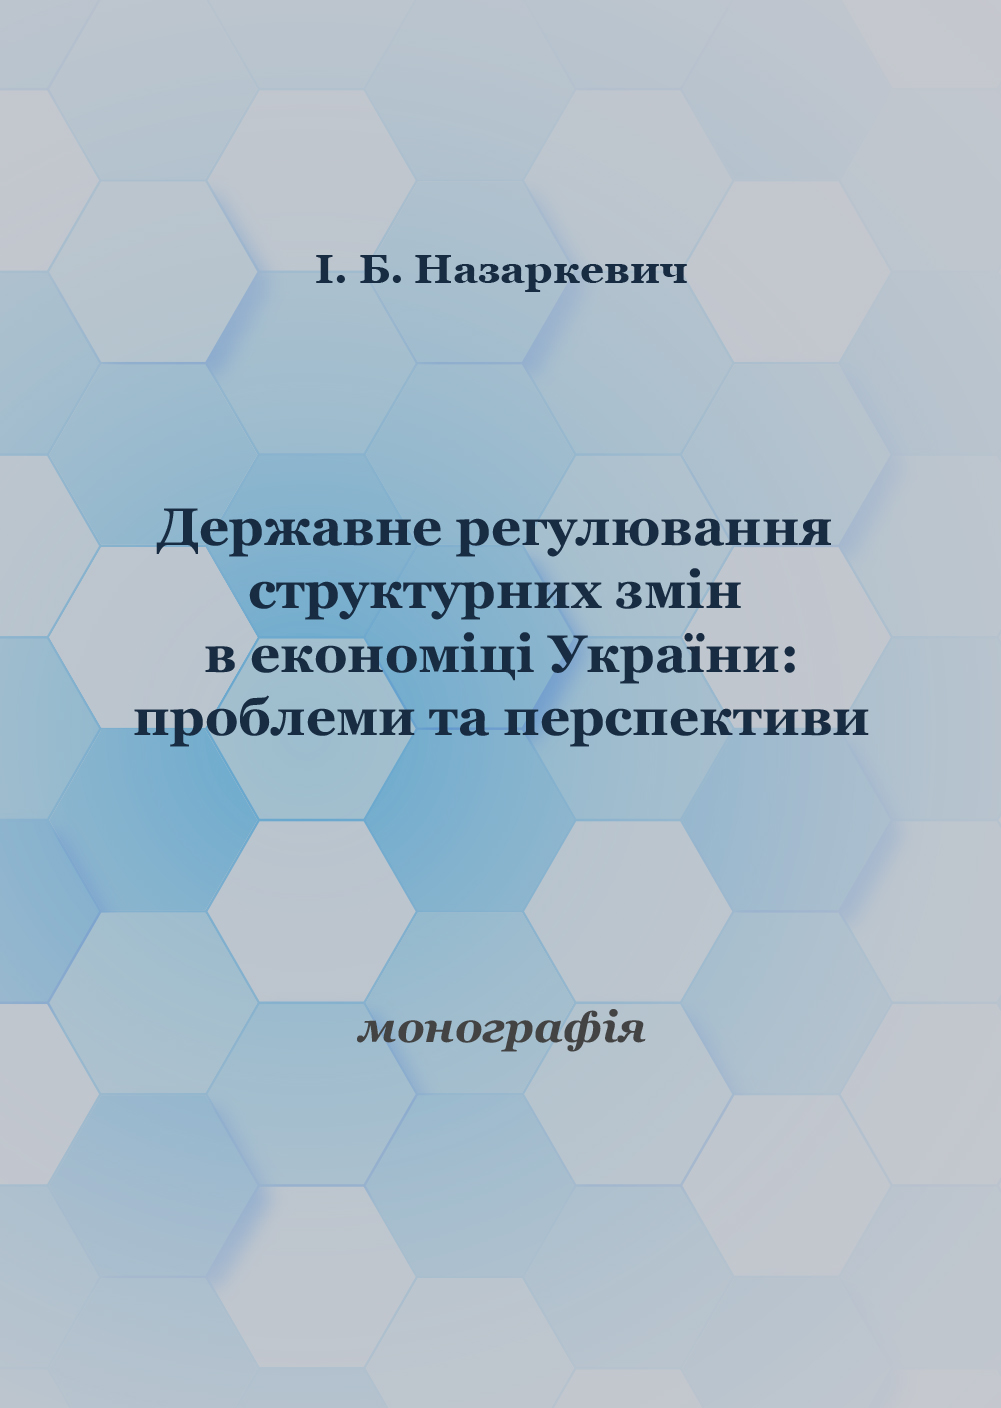 Державне регулювання структурних змін в економіці України: проблеми та перспективи